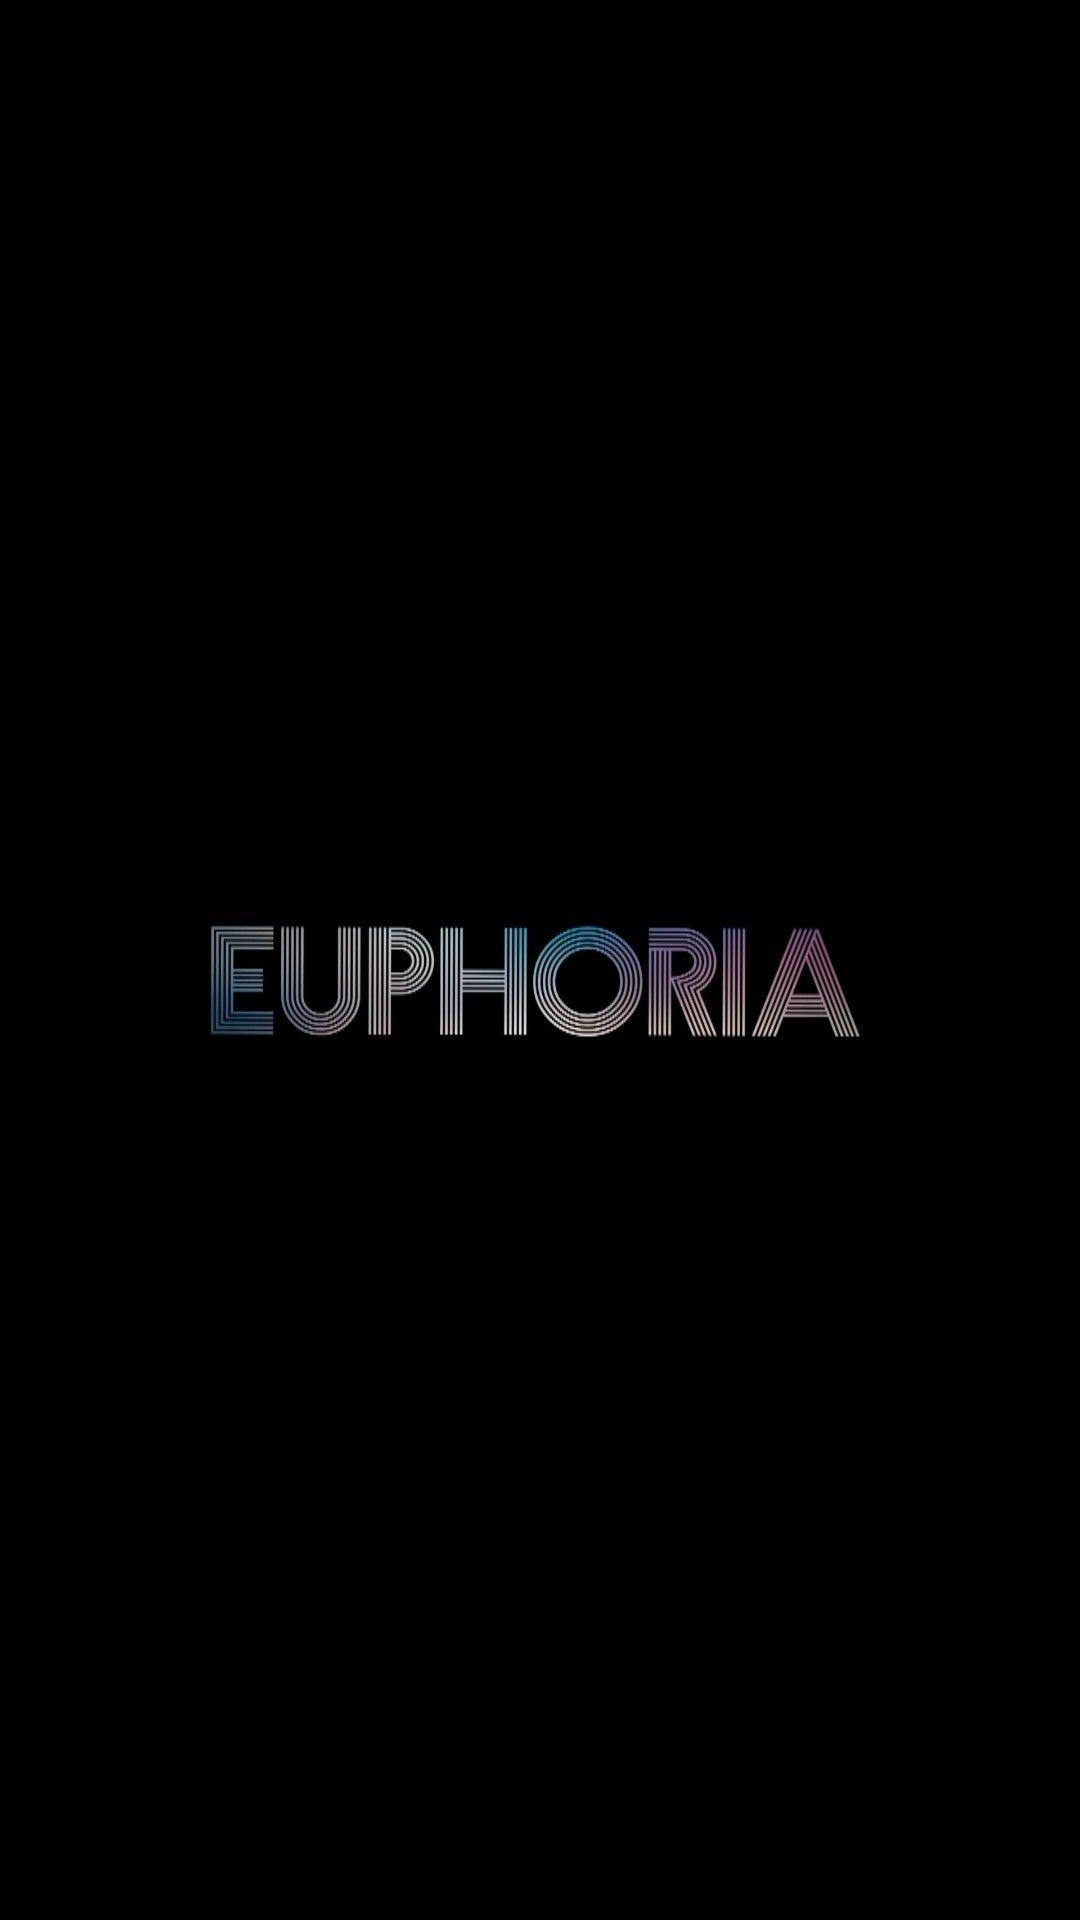 100 Euphoria Wallpapers  Wallpaperscom